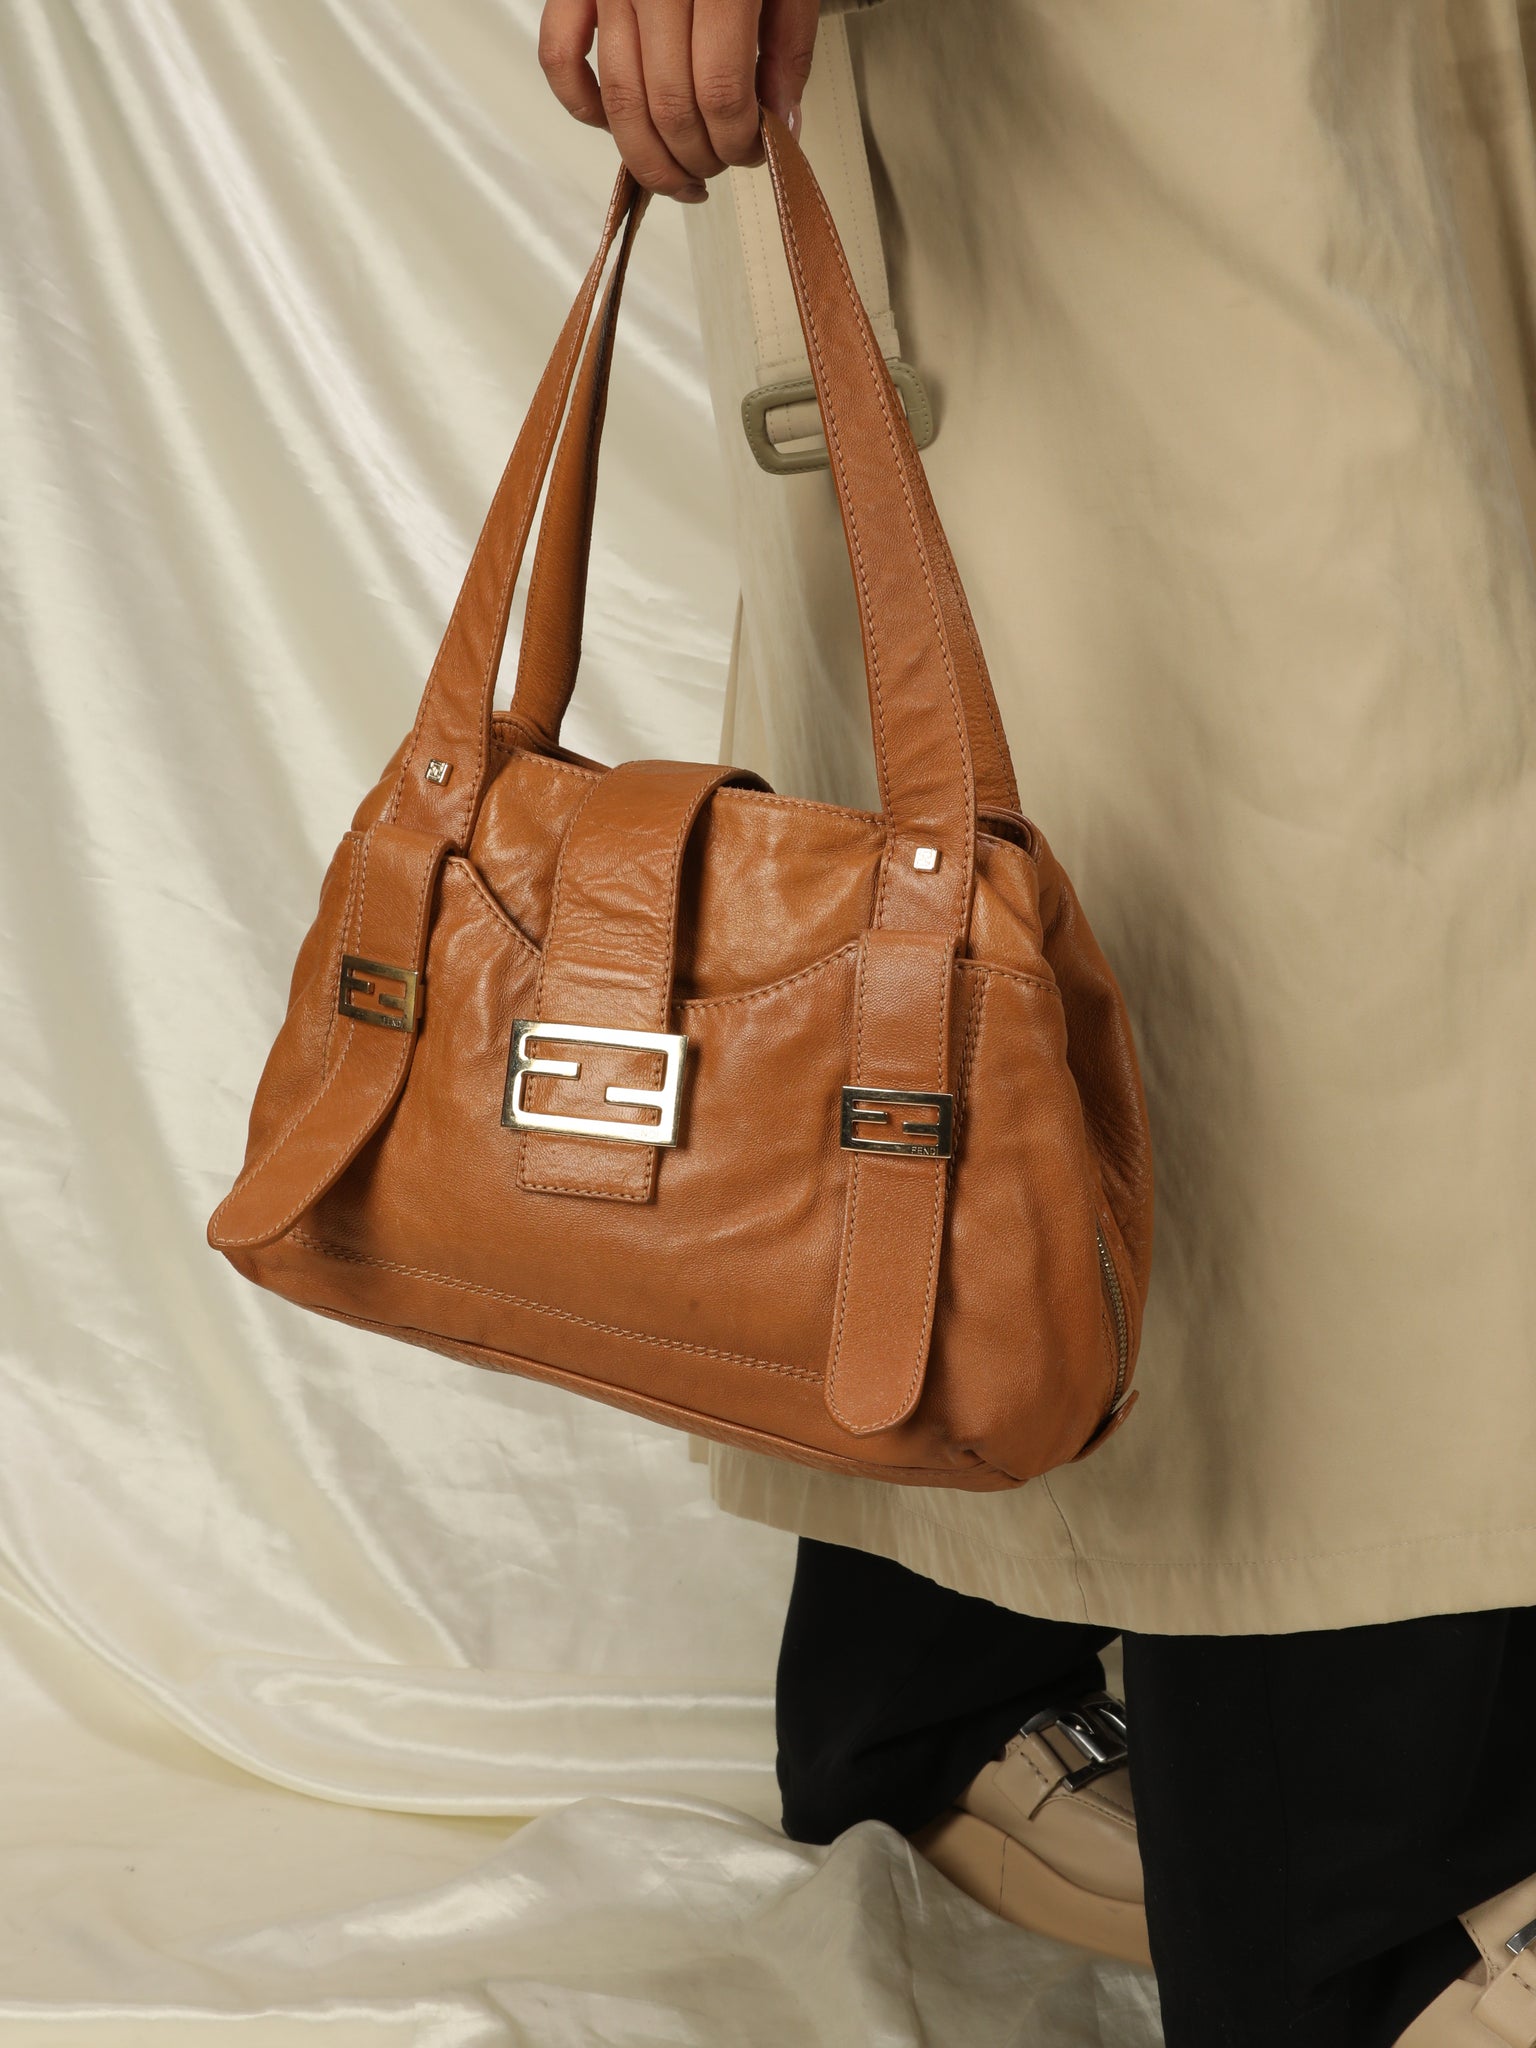 Rare Fendi Leather Shoulder Bag